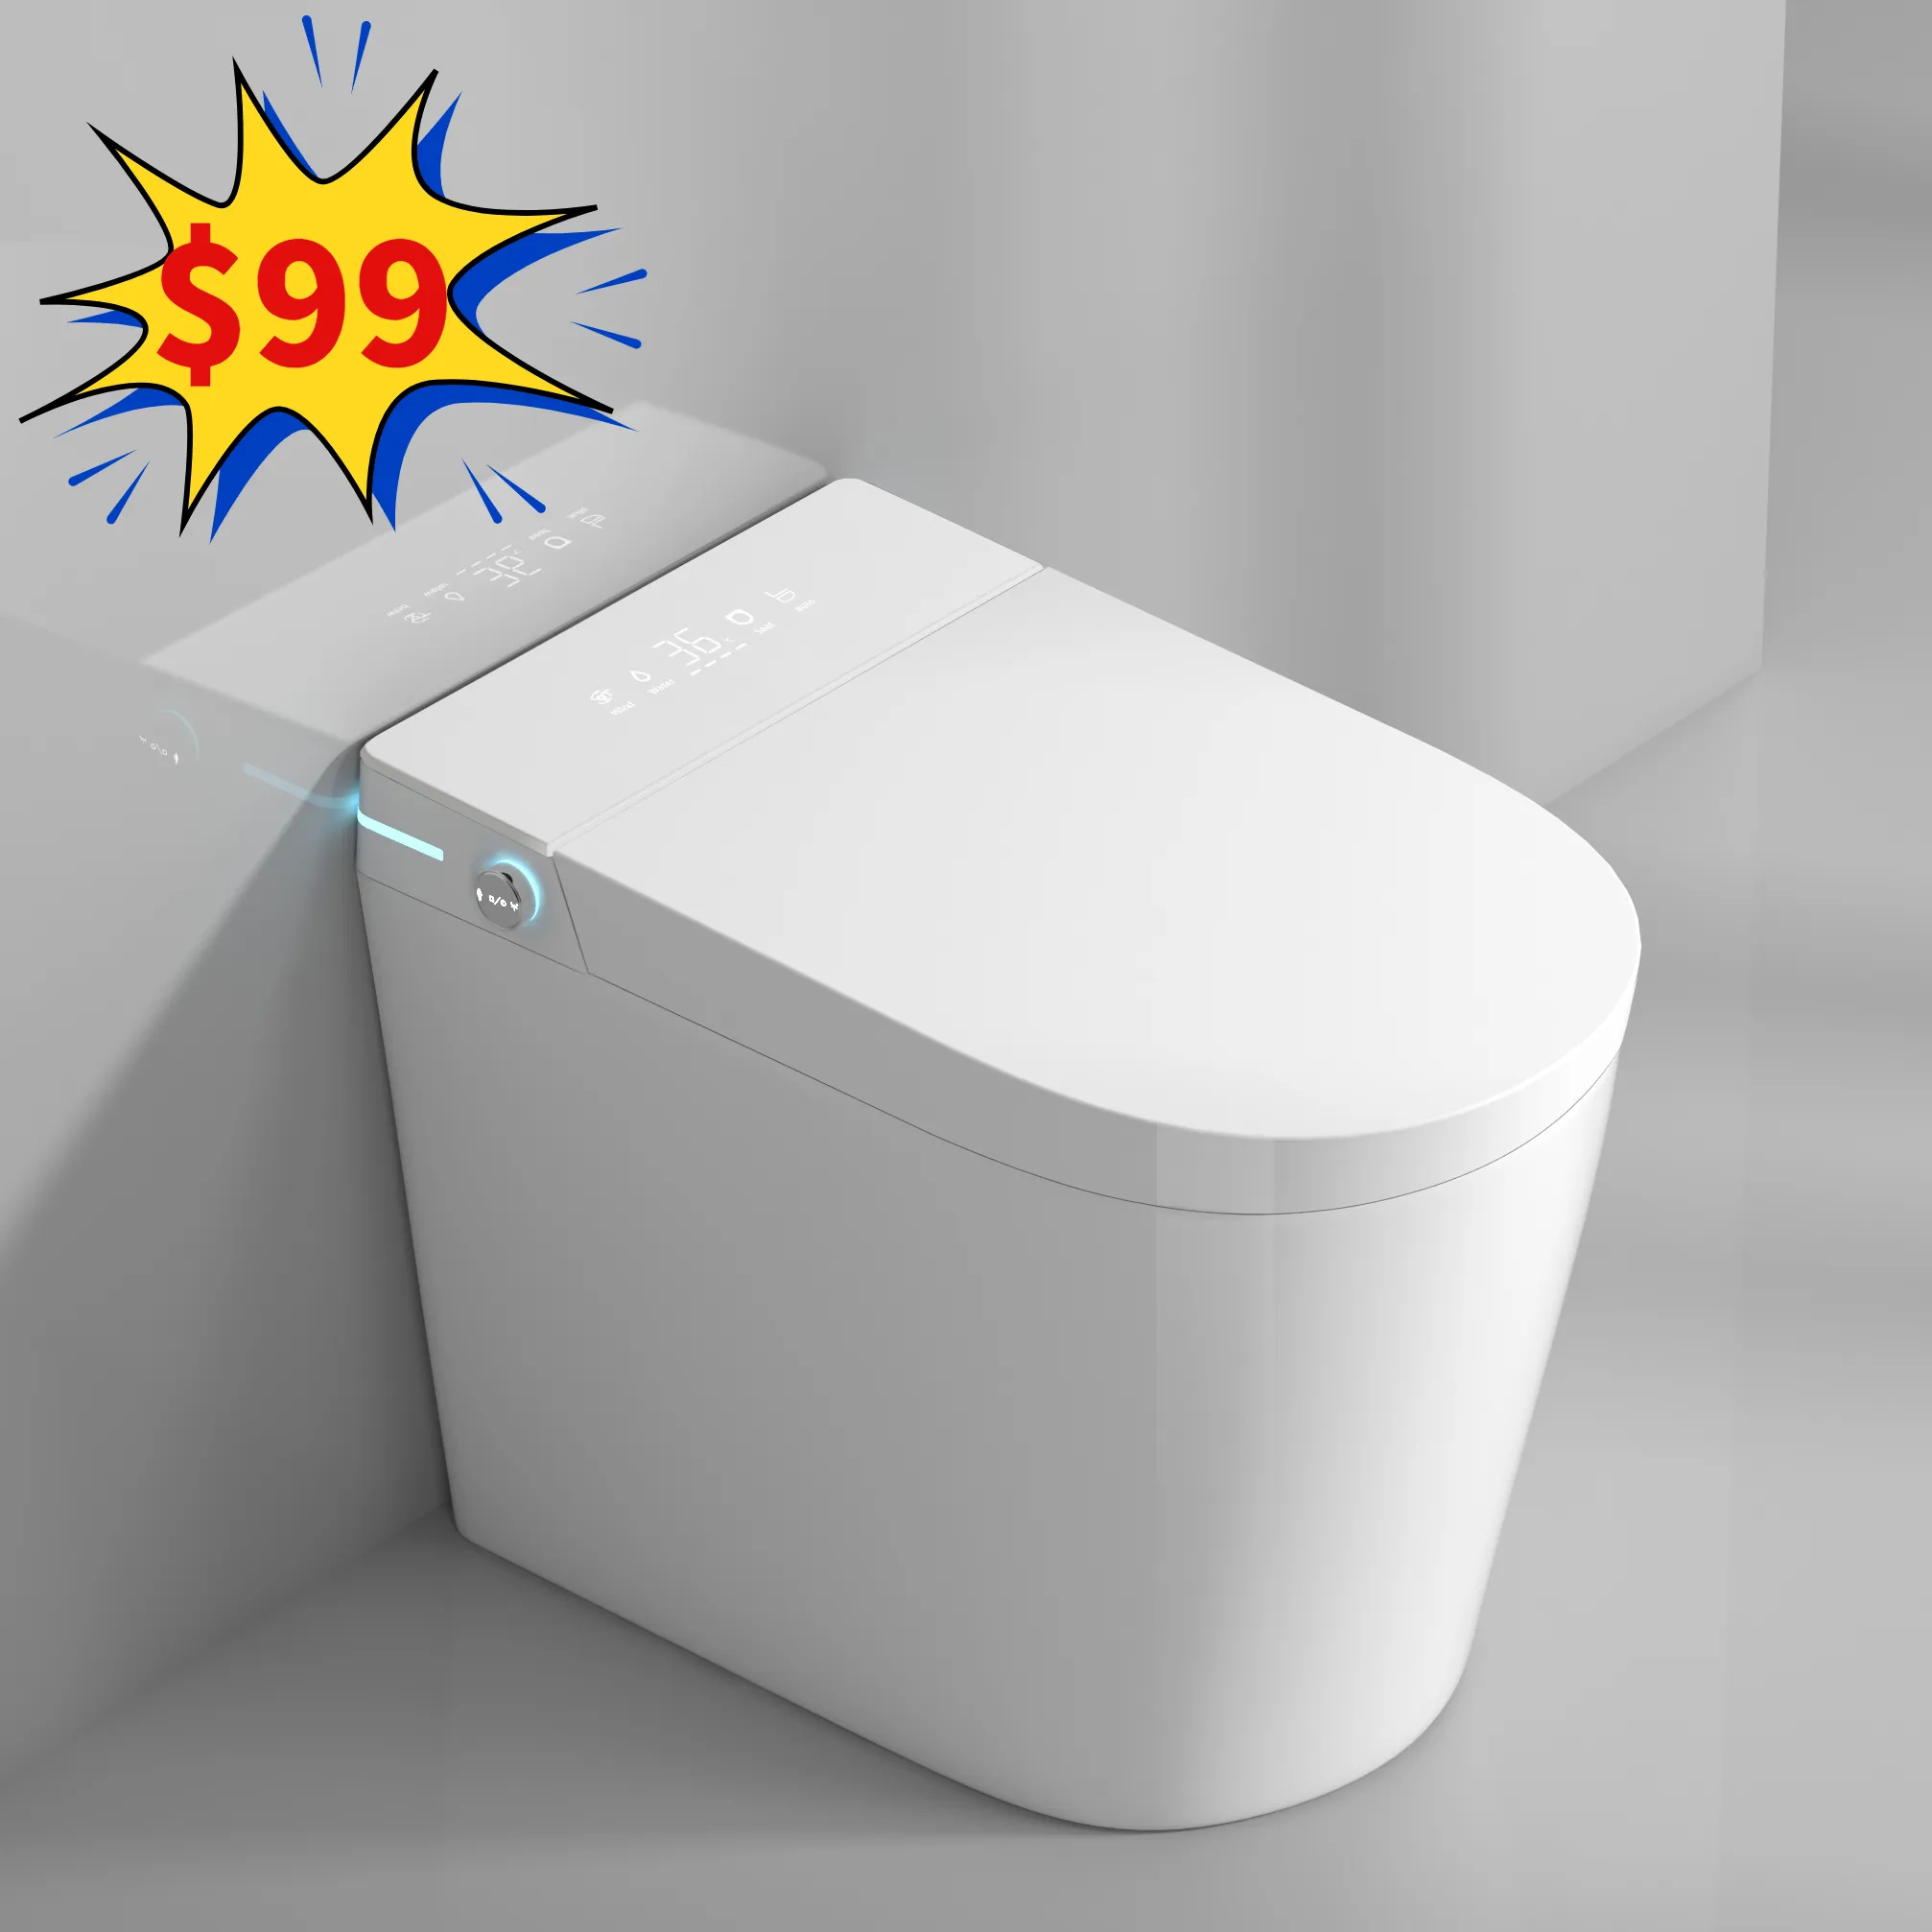 מכירה עליונה שירותים אינטליגנטיים לחסוך מקום גודל קטן כלי סניטריים ארון מים קערת אסלה אוטומטית חדר אמבטיה חדר אמבטיה קרמי חכם אסלה